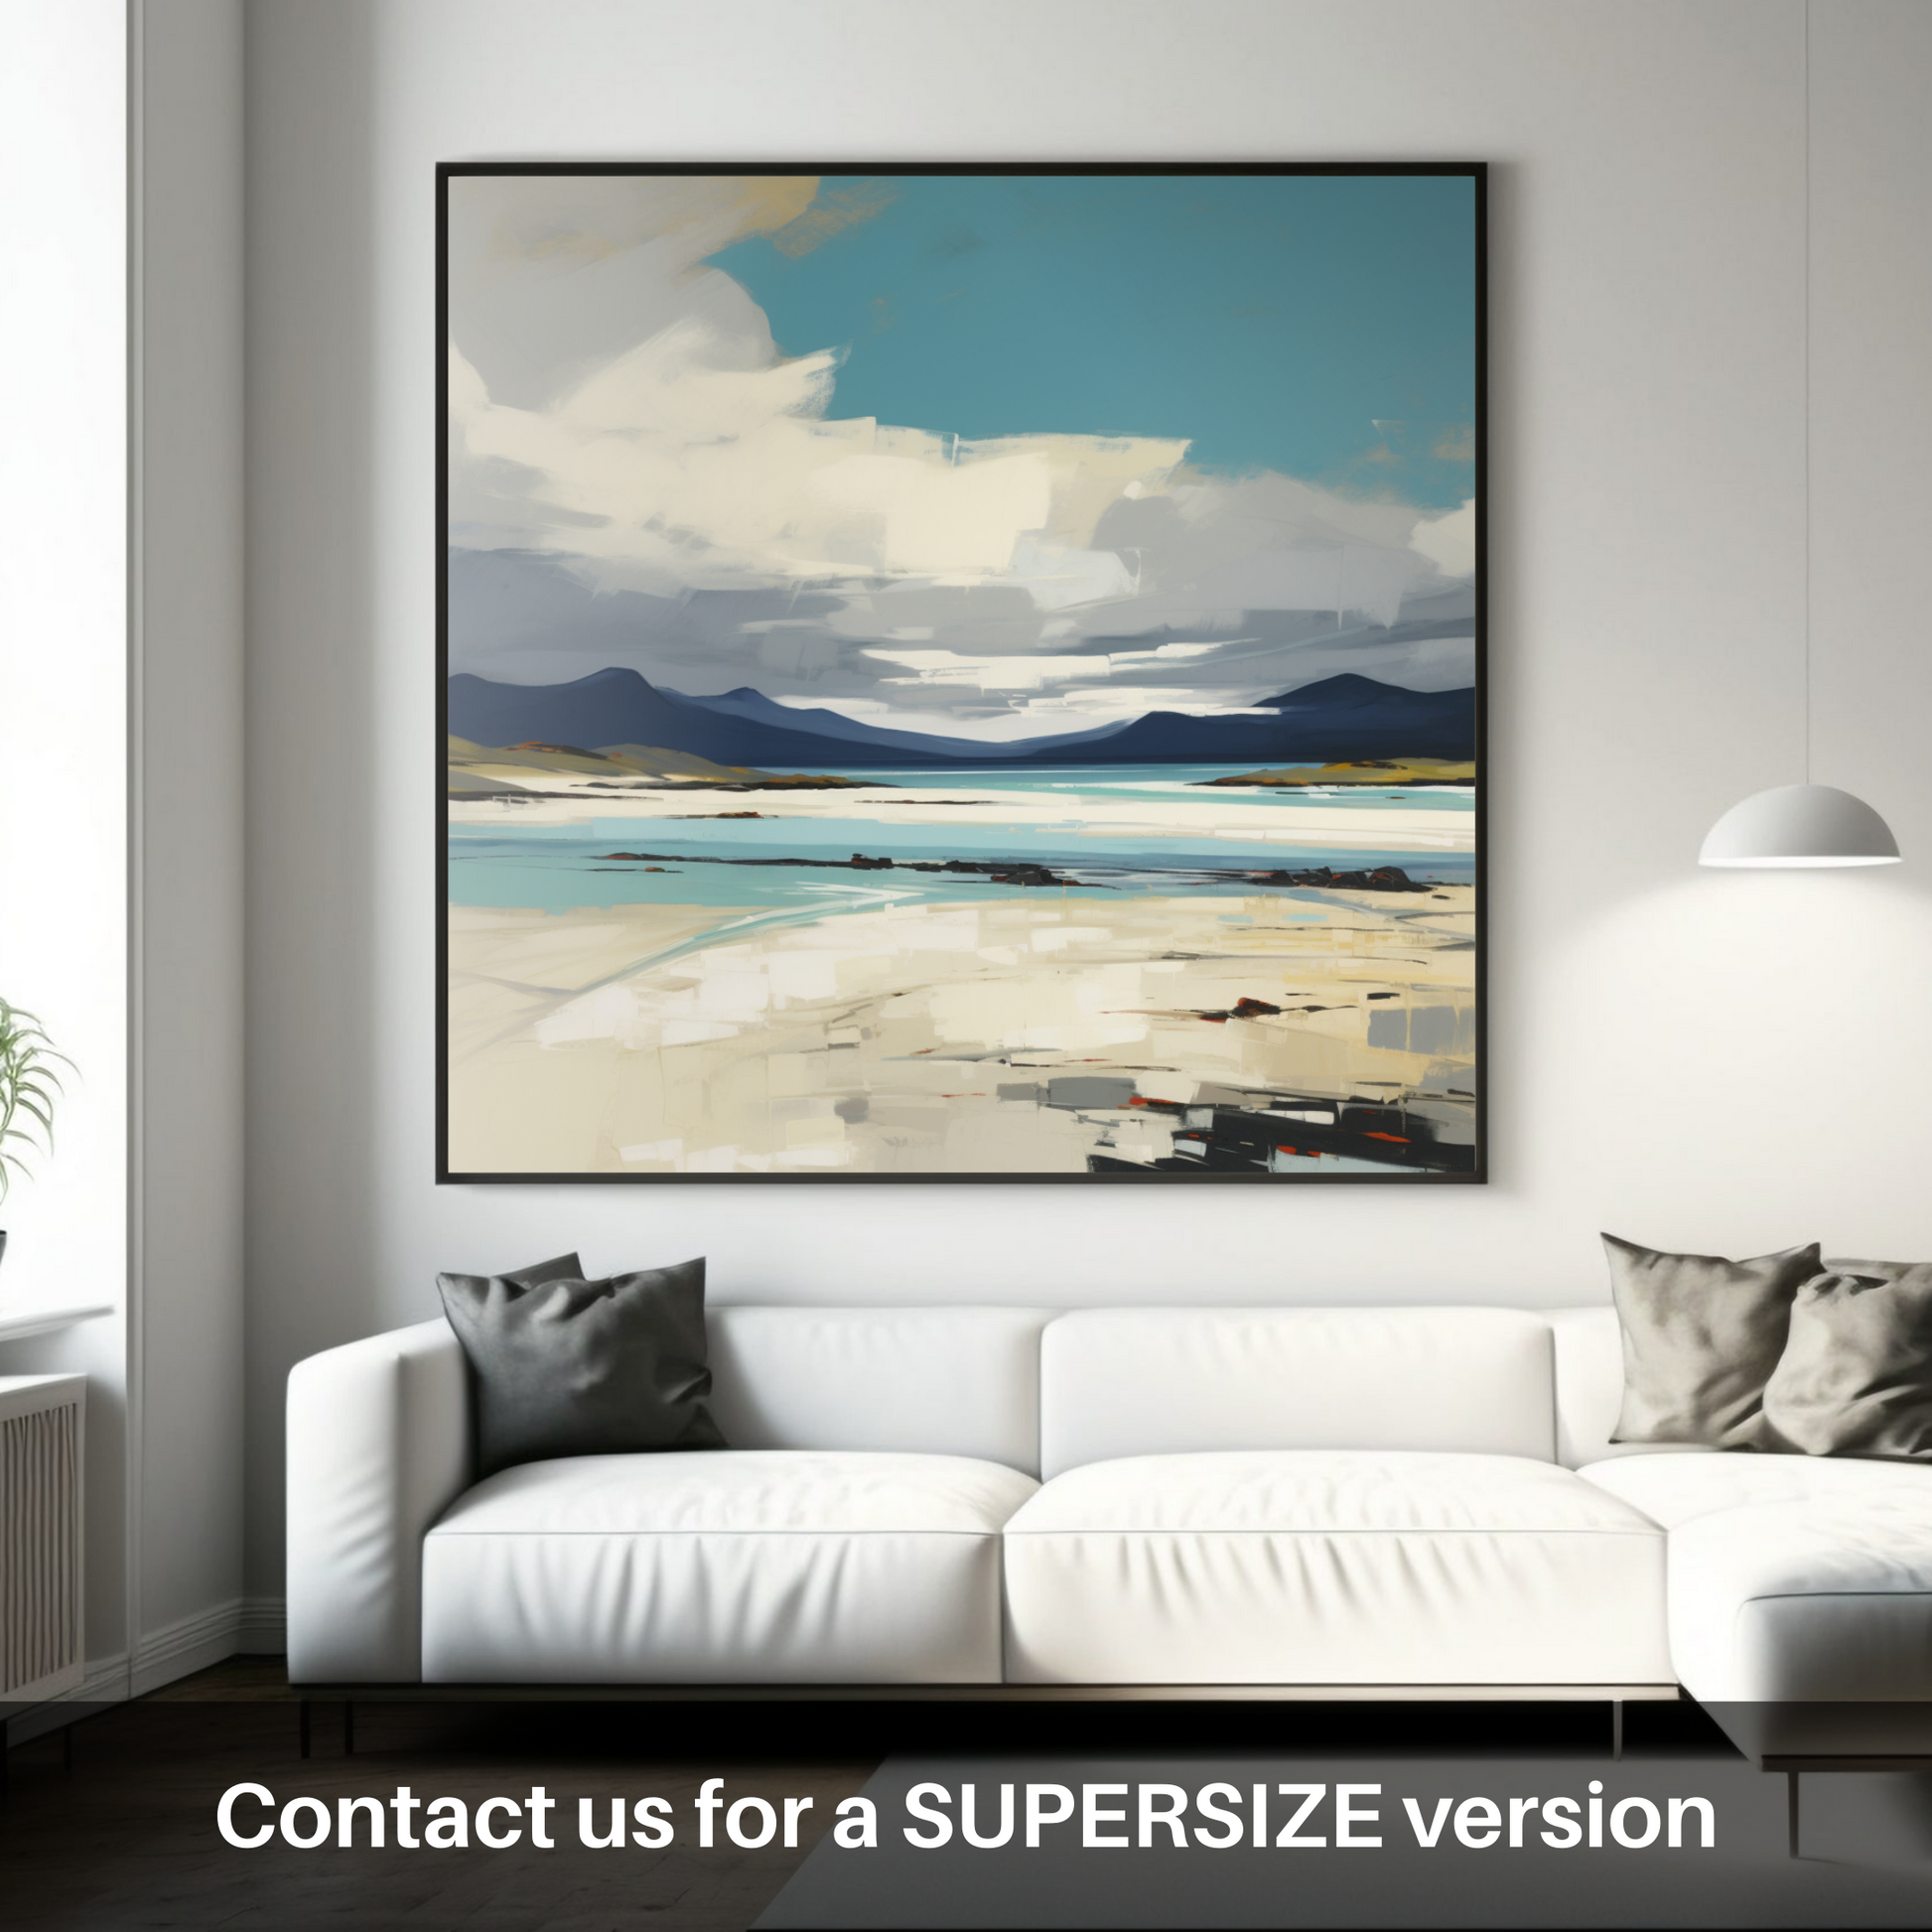 Huge supersize print of Luskentyre Sands on the Isle of Harris